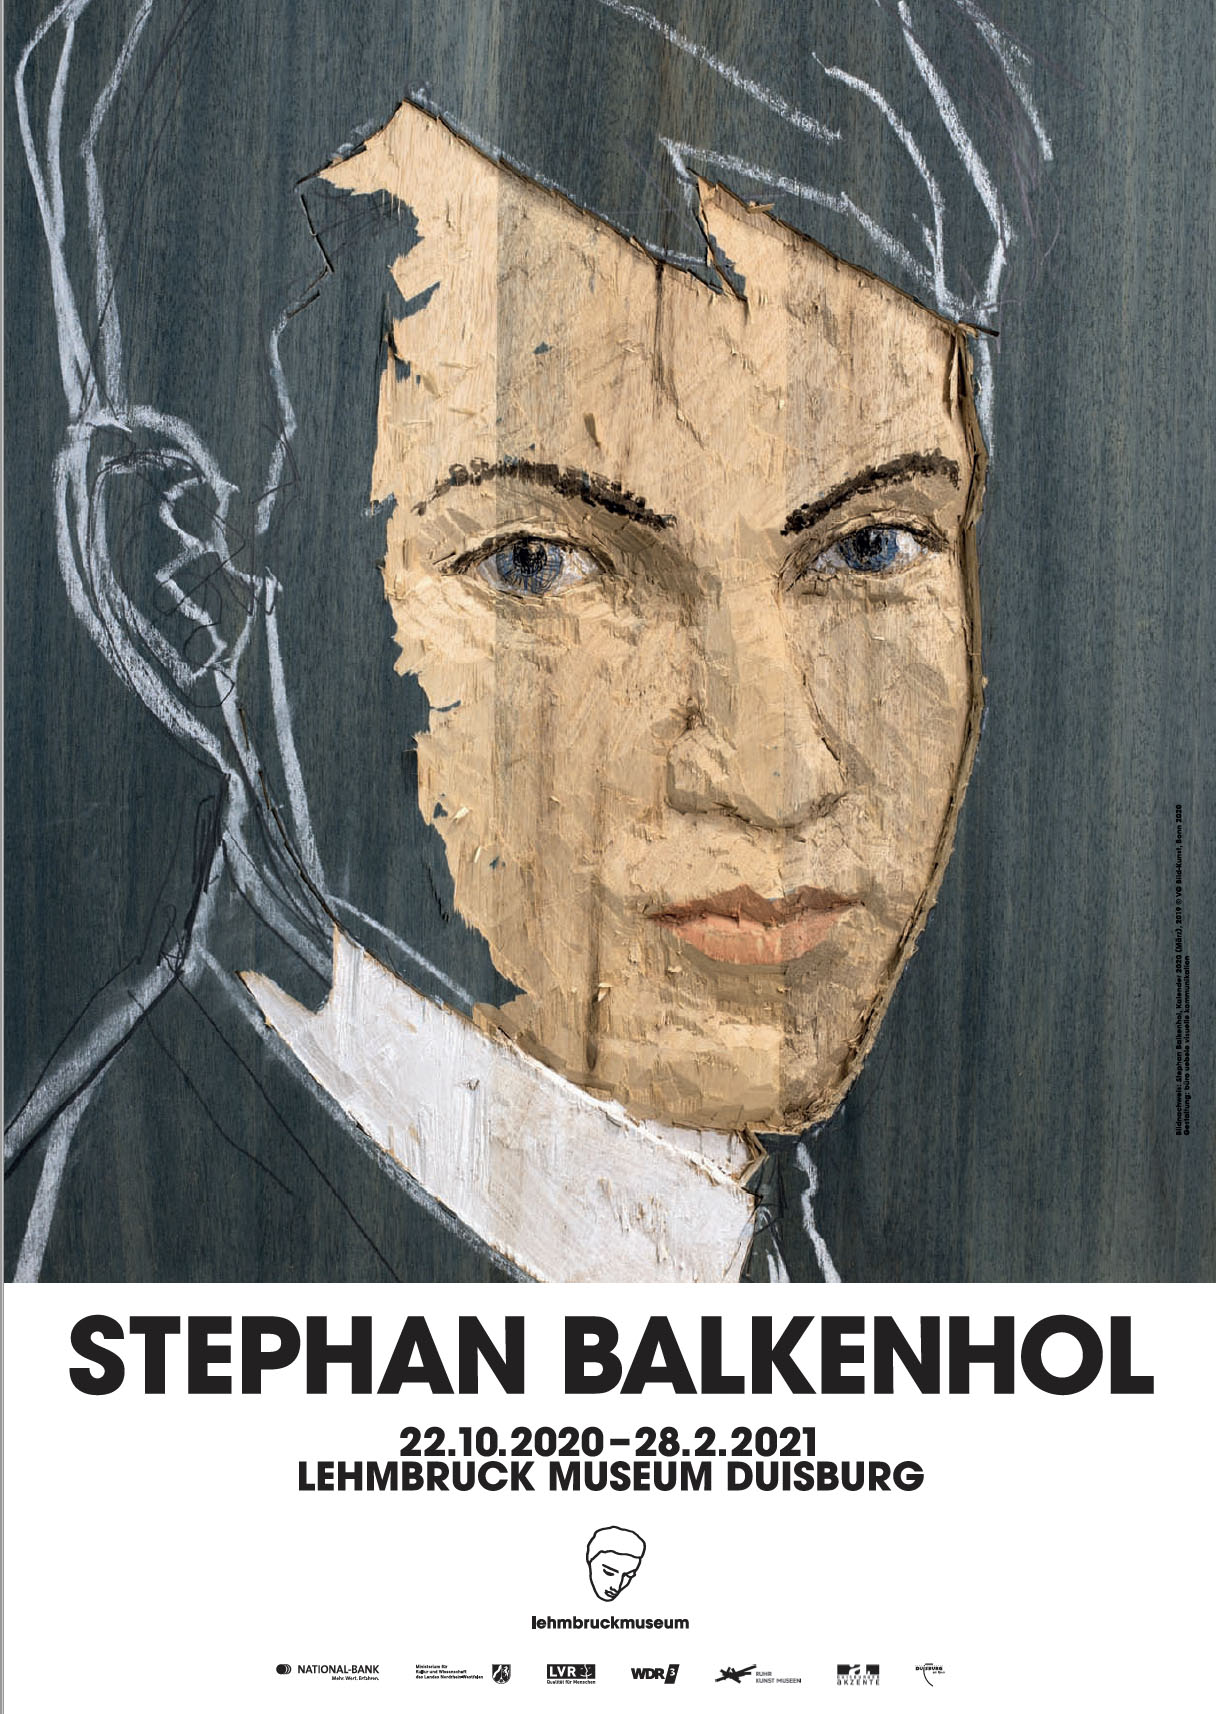 Stephan Balkenhol: Solo exhibition at Lehmbruck Museum, Duisburg (DE)